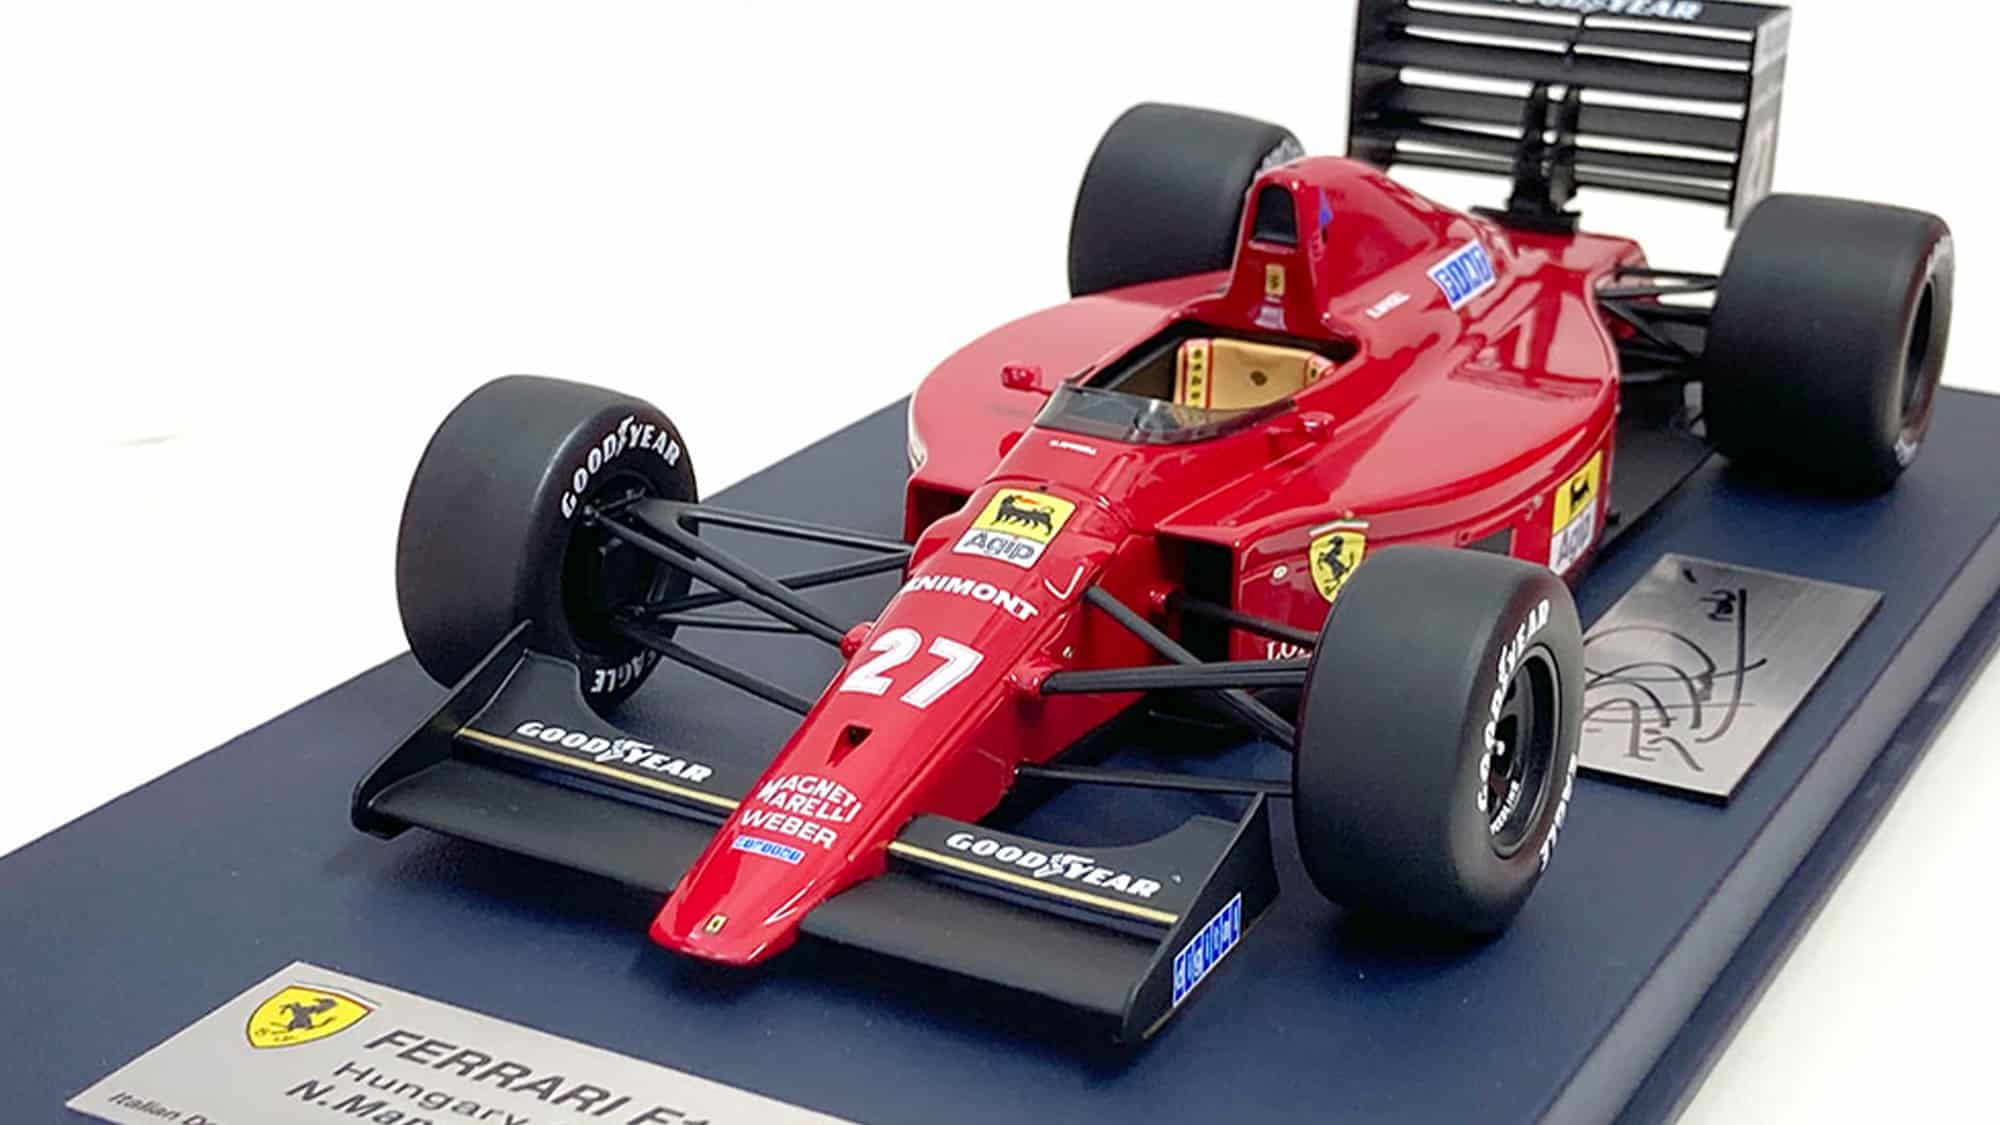 Mansell 89 Ferrari model